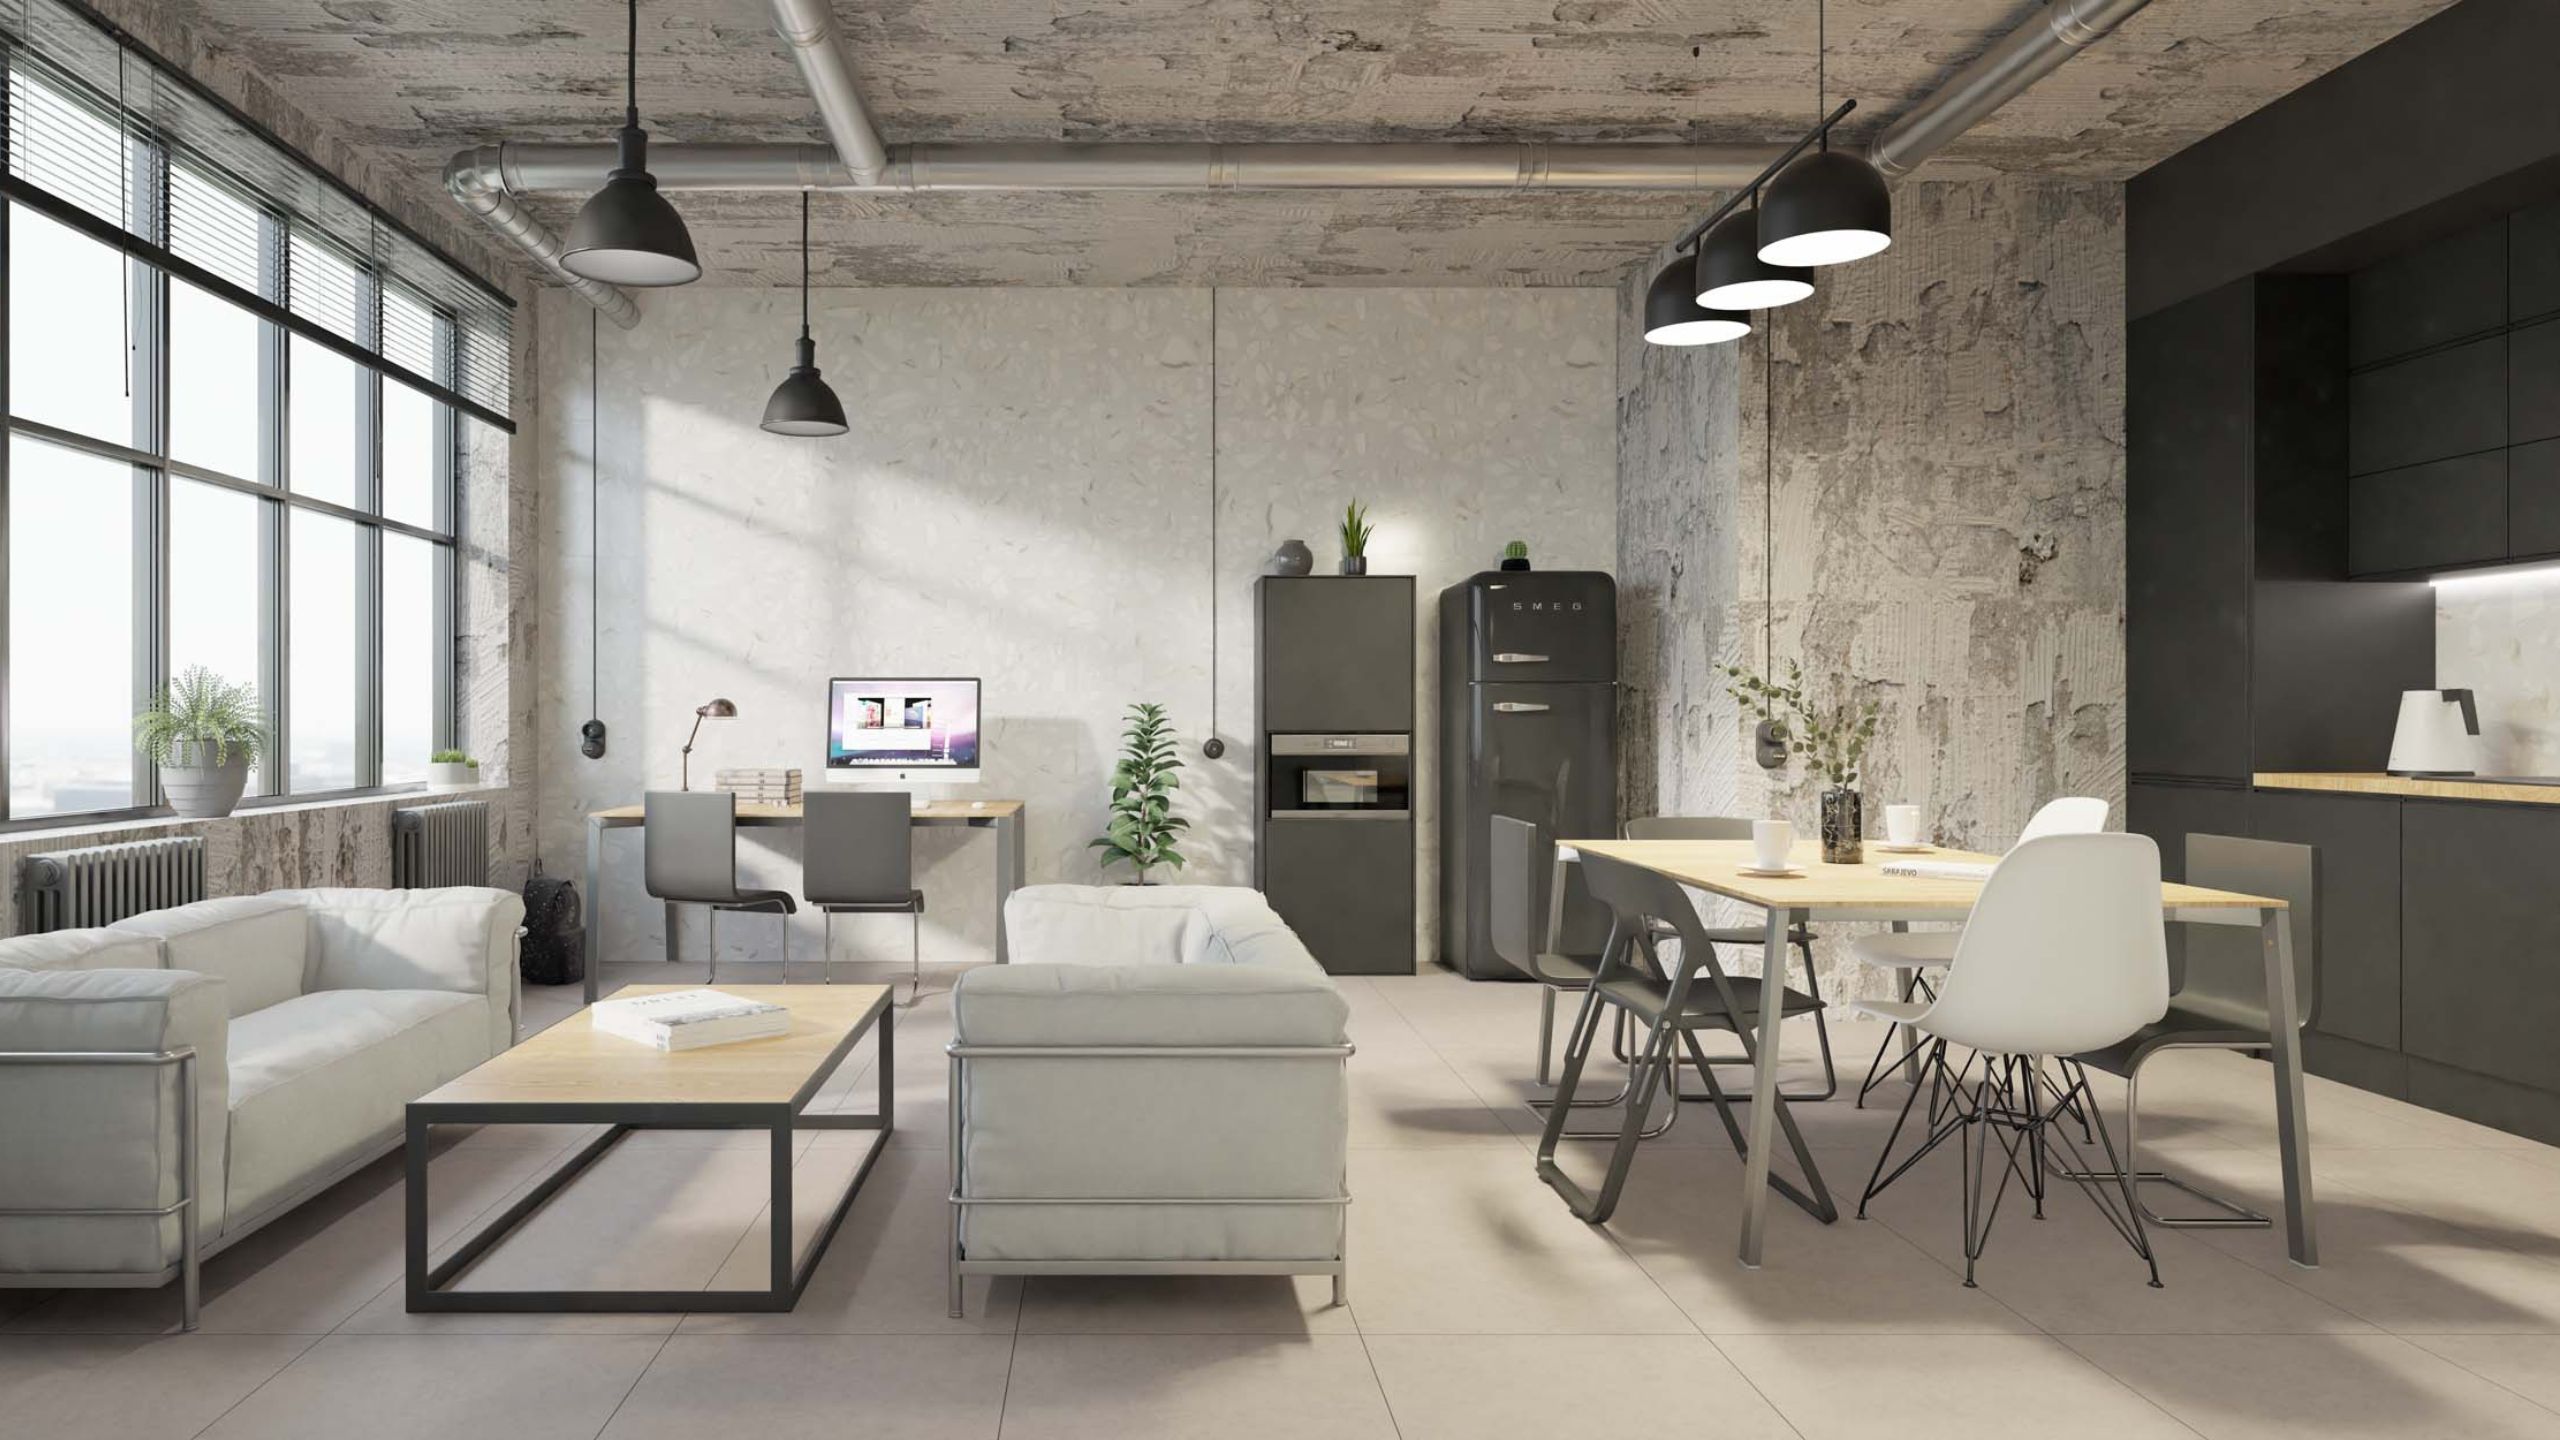 Индустриальный стиль в интерьере 💥 Как обустроить квартиру или дом в индустриальном дизайне?